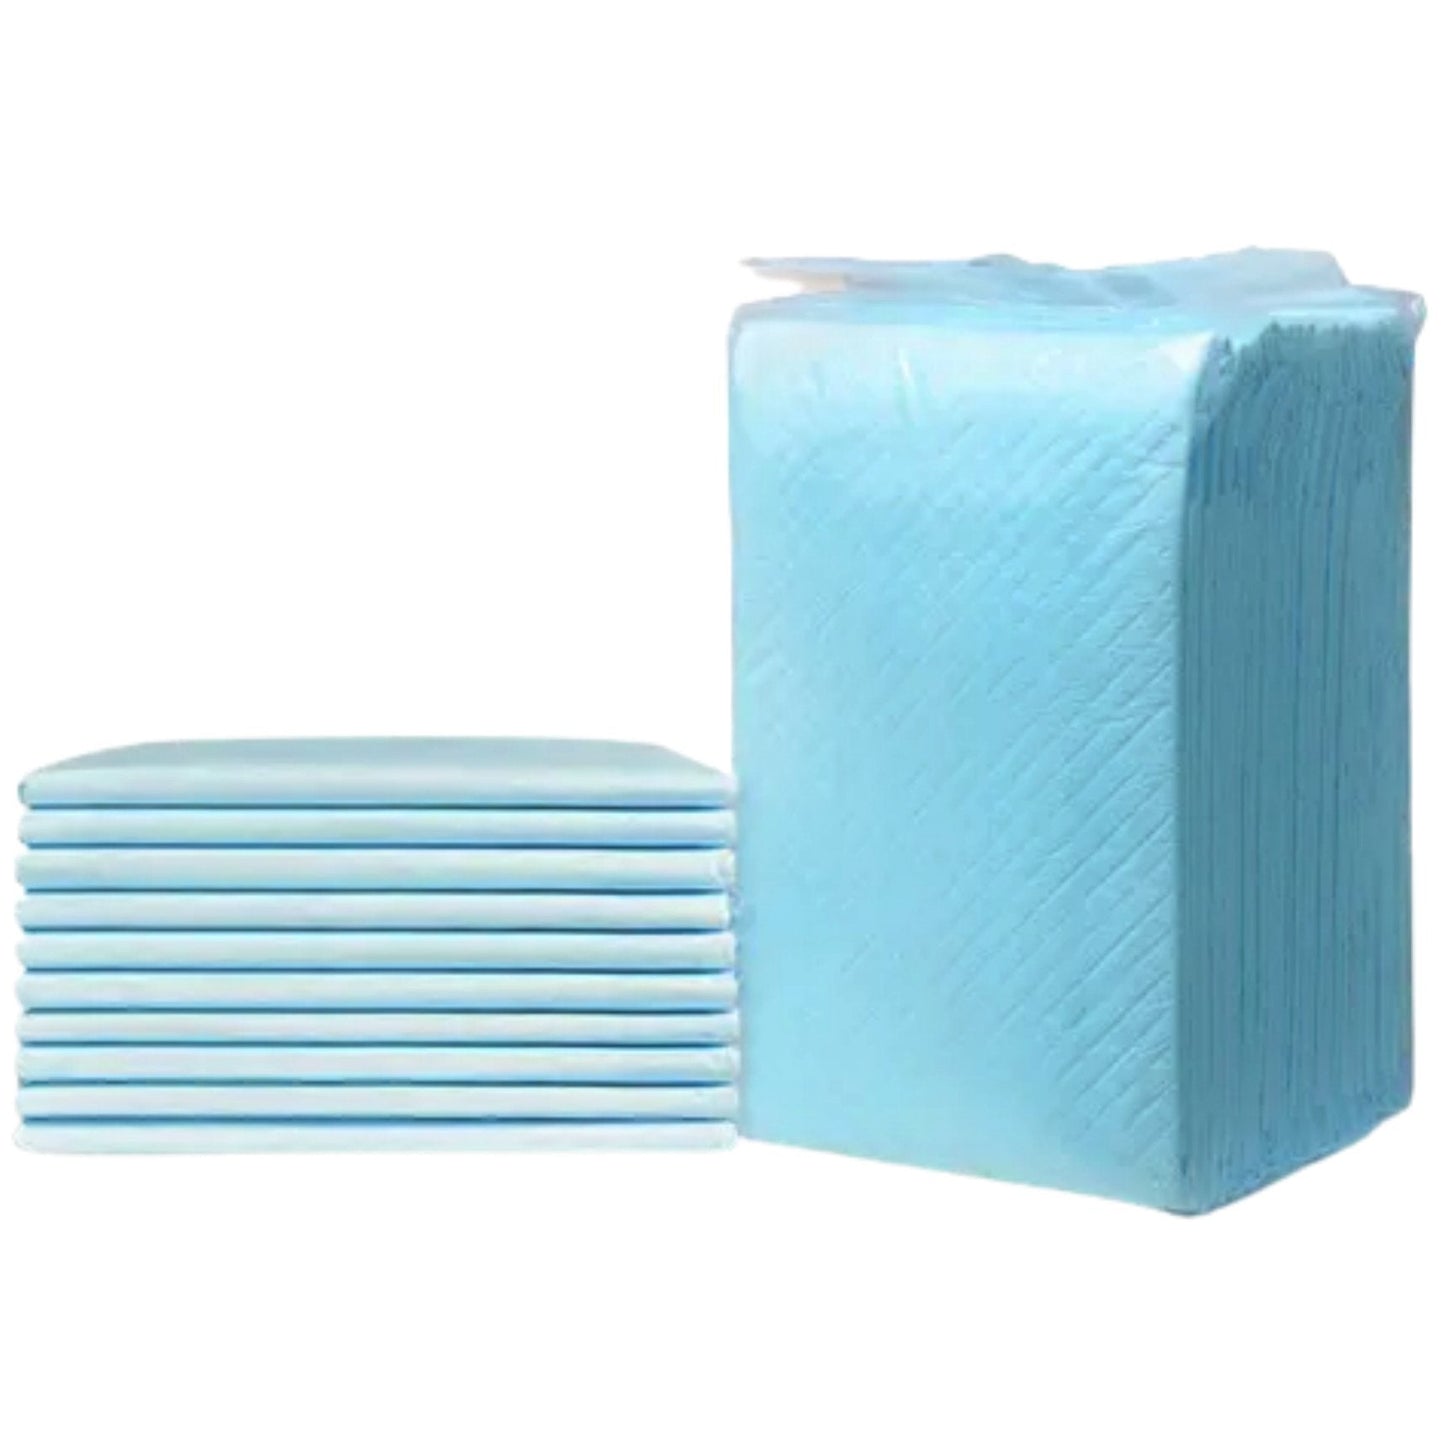 Almohadillas de gel absorbentes premium de Mr. Peanut, 23 x 23 pulgadas, 6 capas de protección ligeramente perfumada